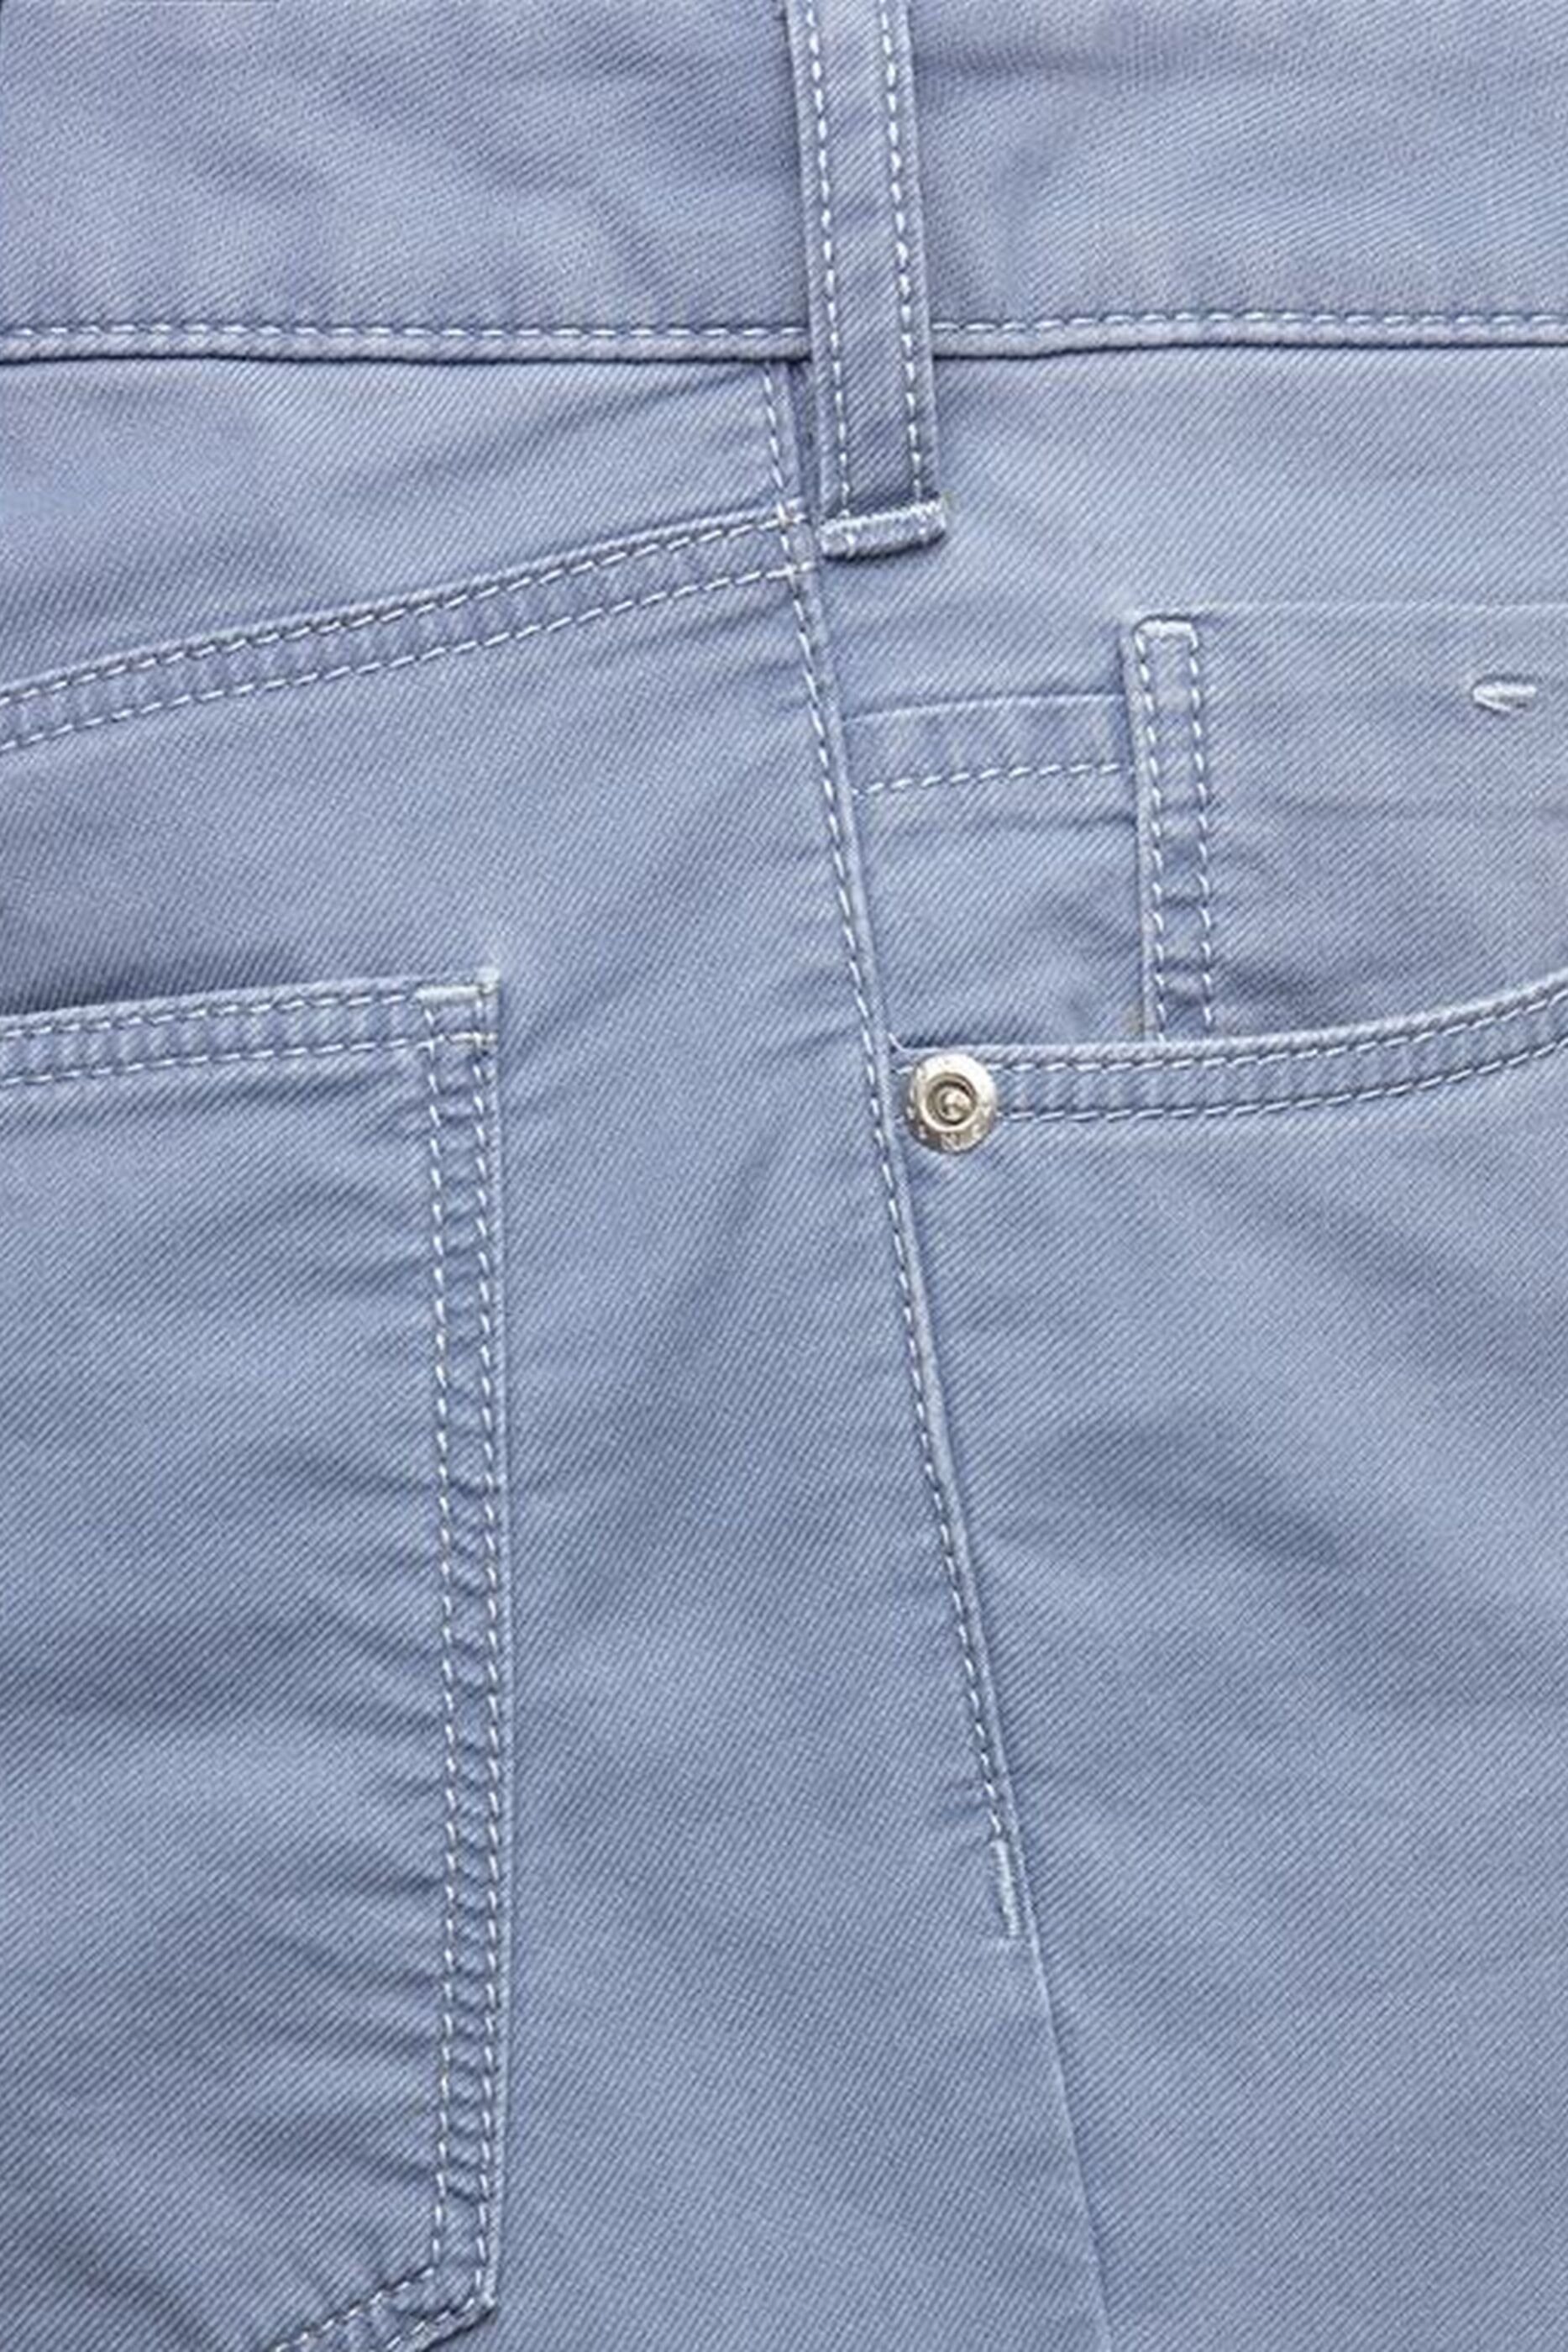 aus Slim-fit-Jeans Produktion MEYER blau europäischer 'M5'